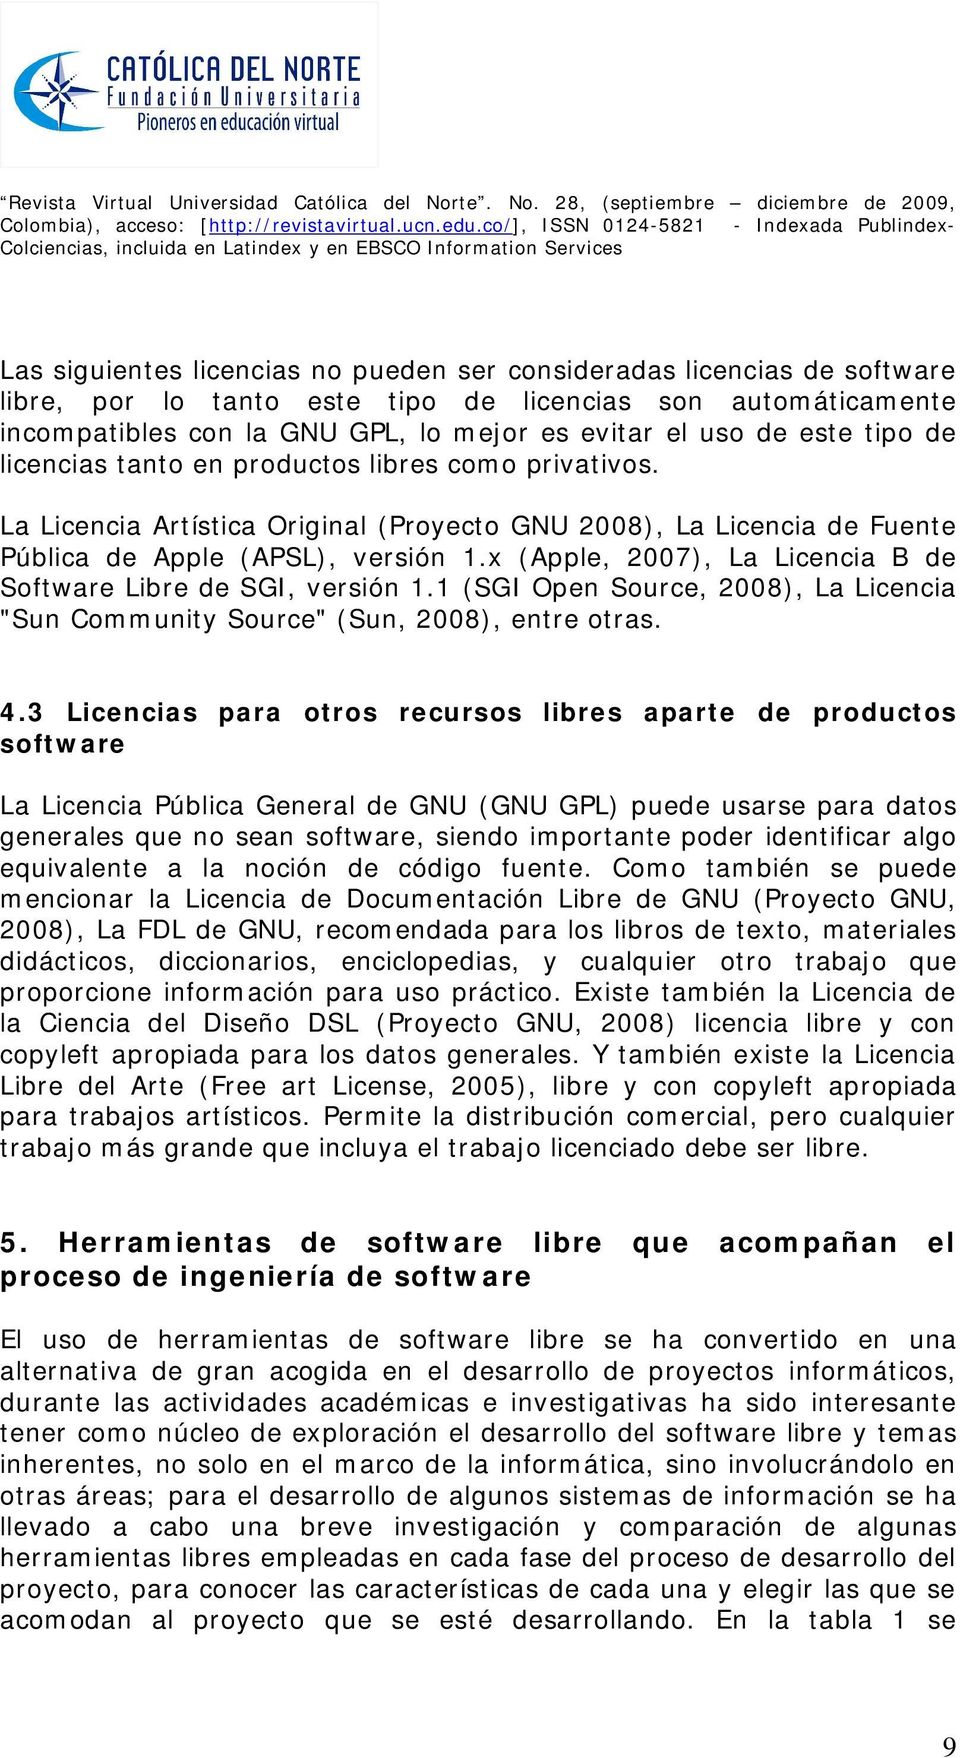 x (Apple, 2007), La Licencia B de Software Libre de SGI, versión 1.1 (SGI Open Source, 2008), La Licencia "Sun Community Source" (Sun, 2008), entre otras. 4.